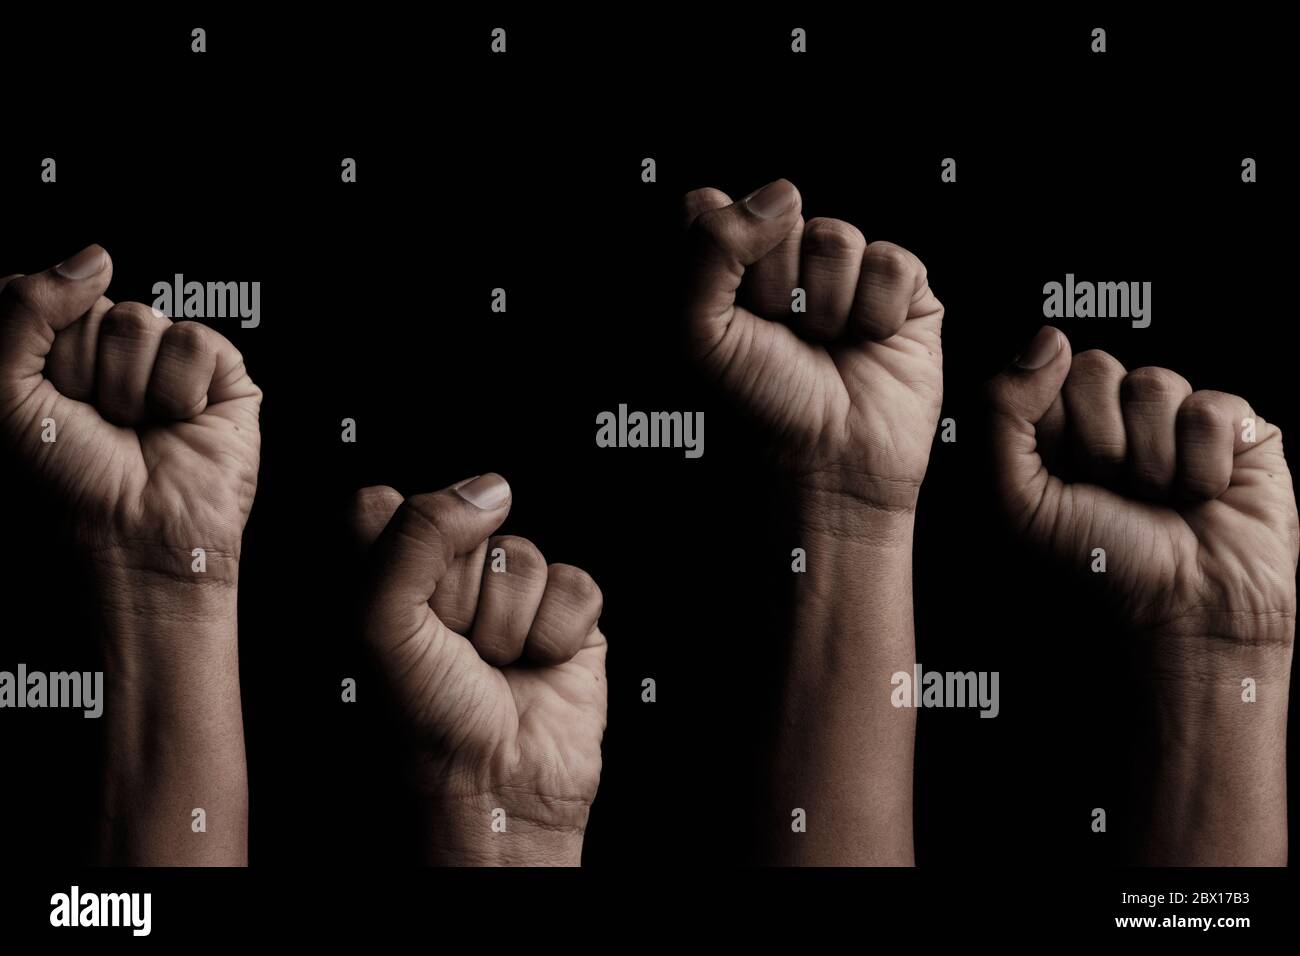 Konzept gegen Rassismus oder Rassendiskriminierung durch Handgesten Faust oder Solidarität Stockfoto